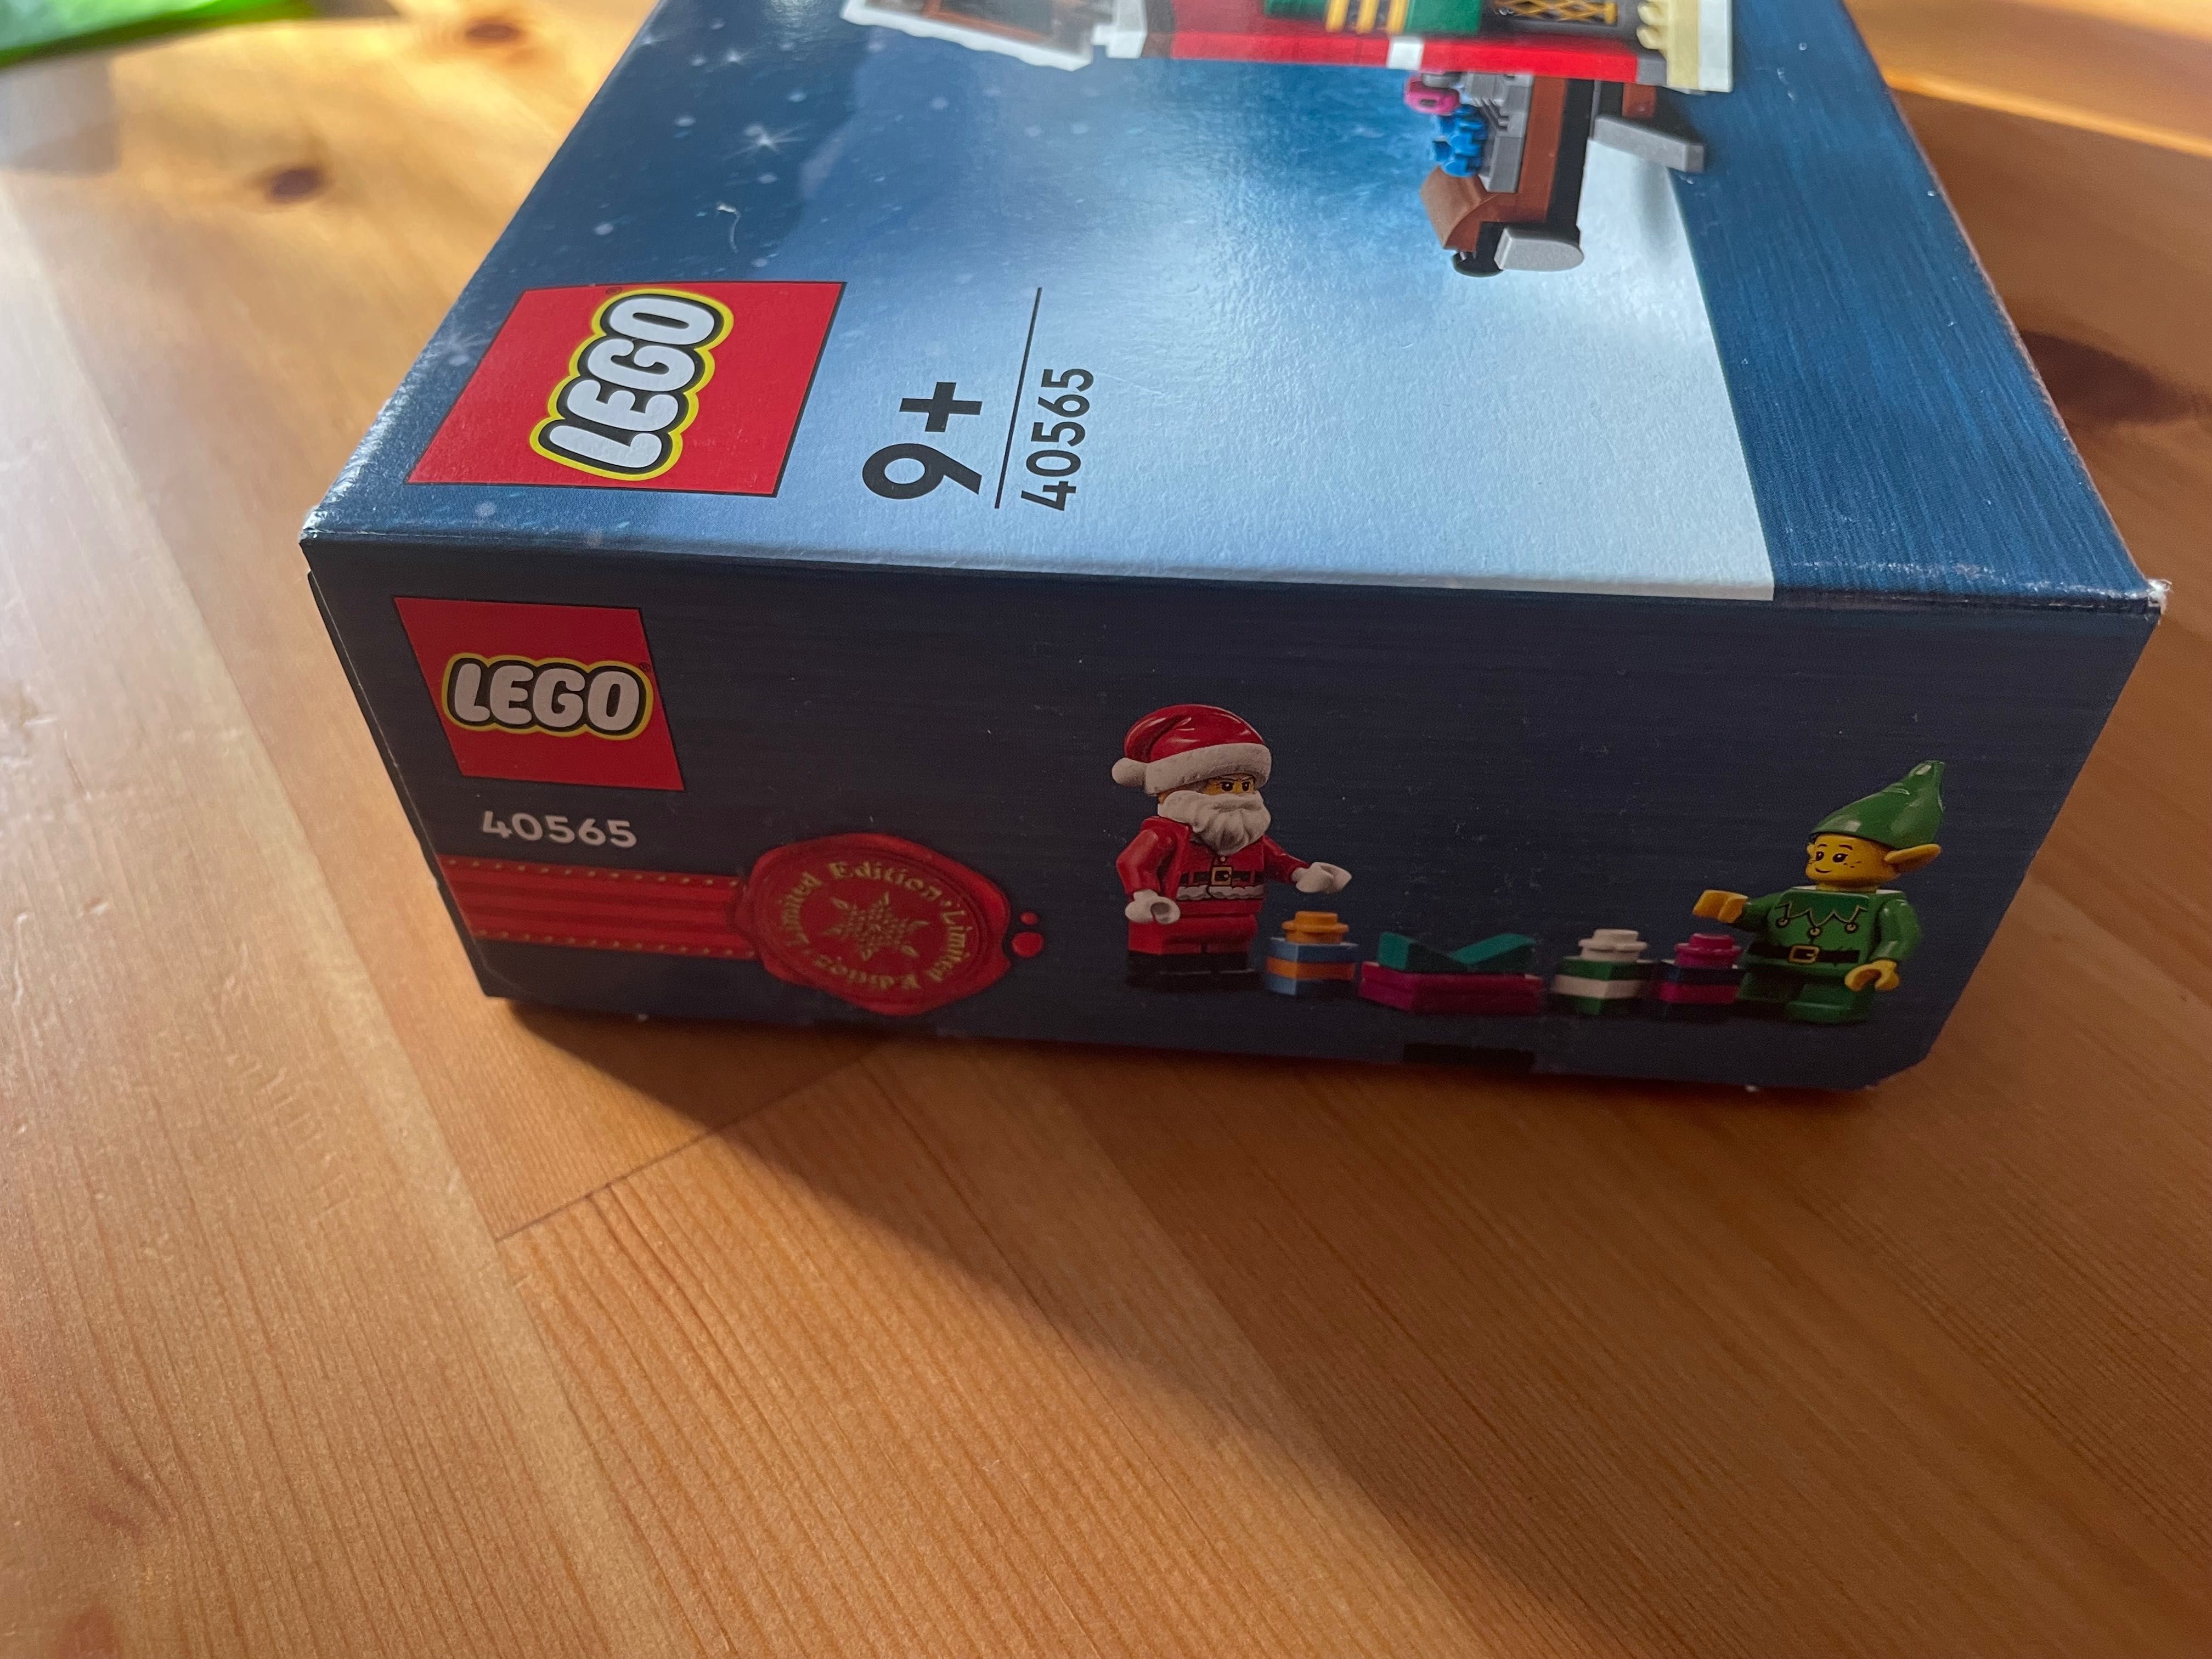 LEGO - Atelierul lui Mos Crăciun